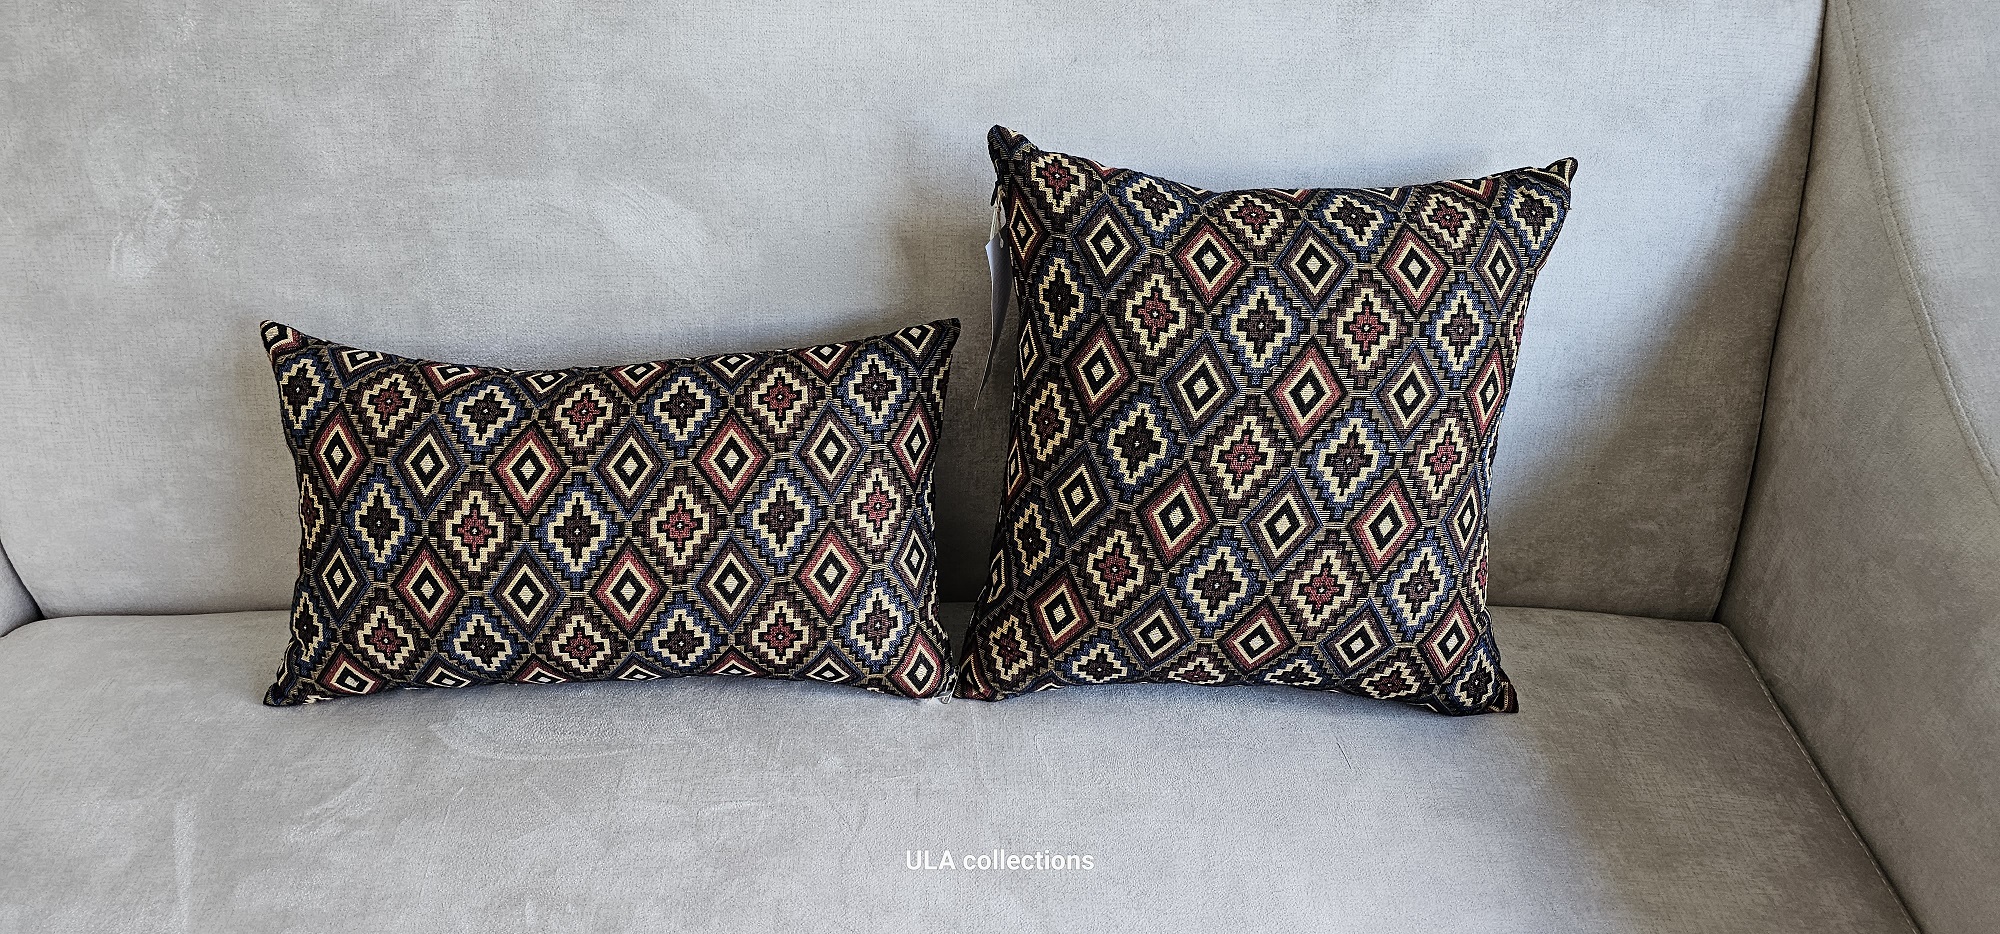 ULA decorative pillow